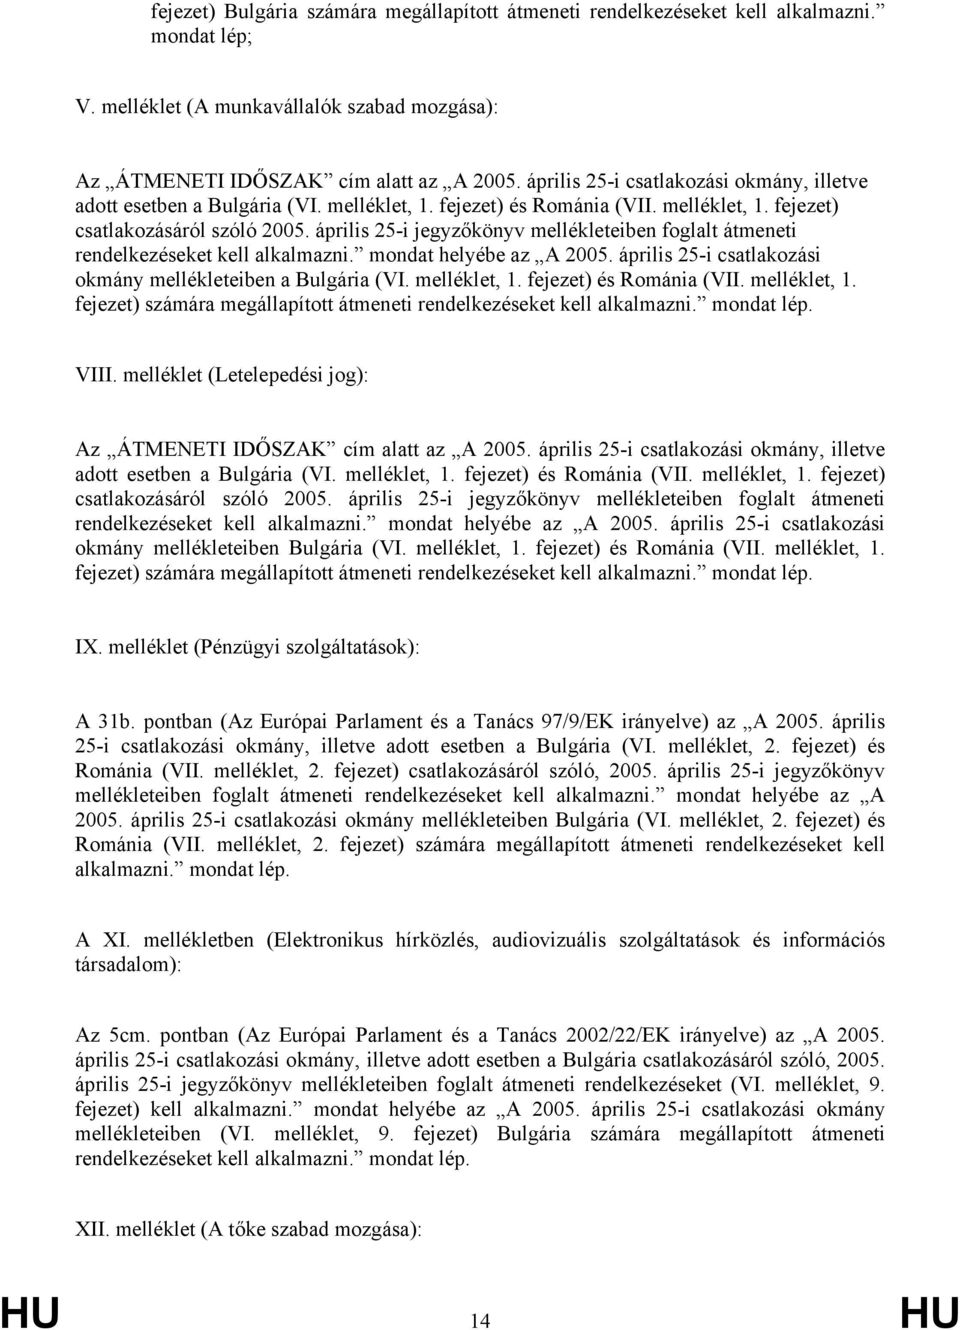 április 25-i jegyzőkönyv mellékleteiben foglalt átmeneti rendelkezéseket kell alkalmazni. mondat helyébe az A 2005. április 25-i csatlakozási okmány mellékleteiben a Bulgária (VI. melléklet, 1.